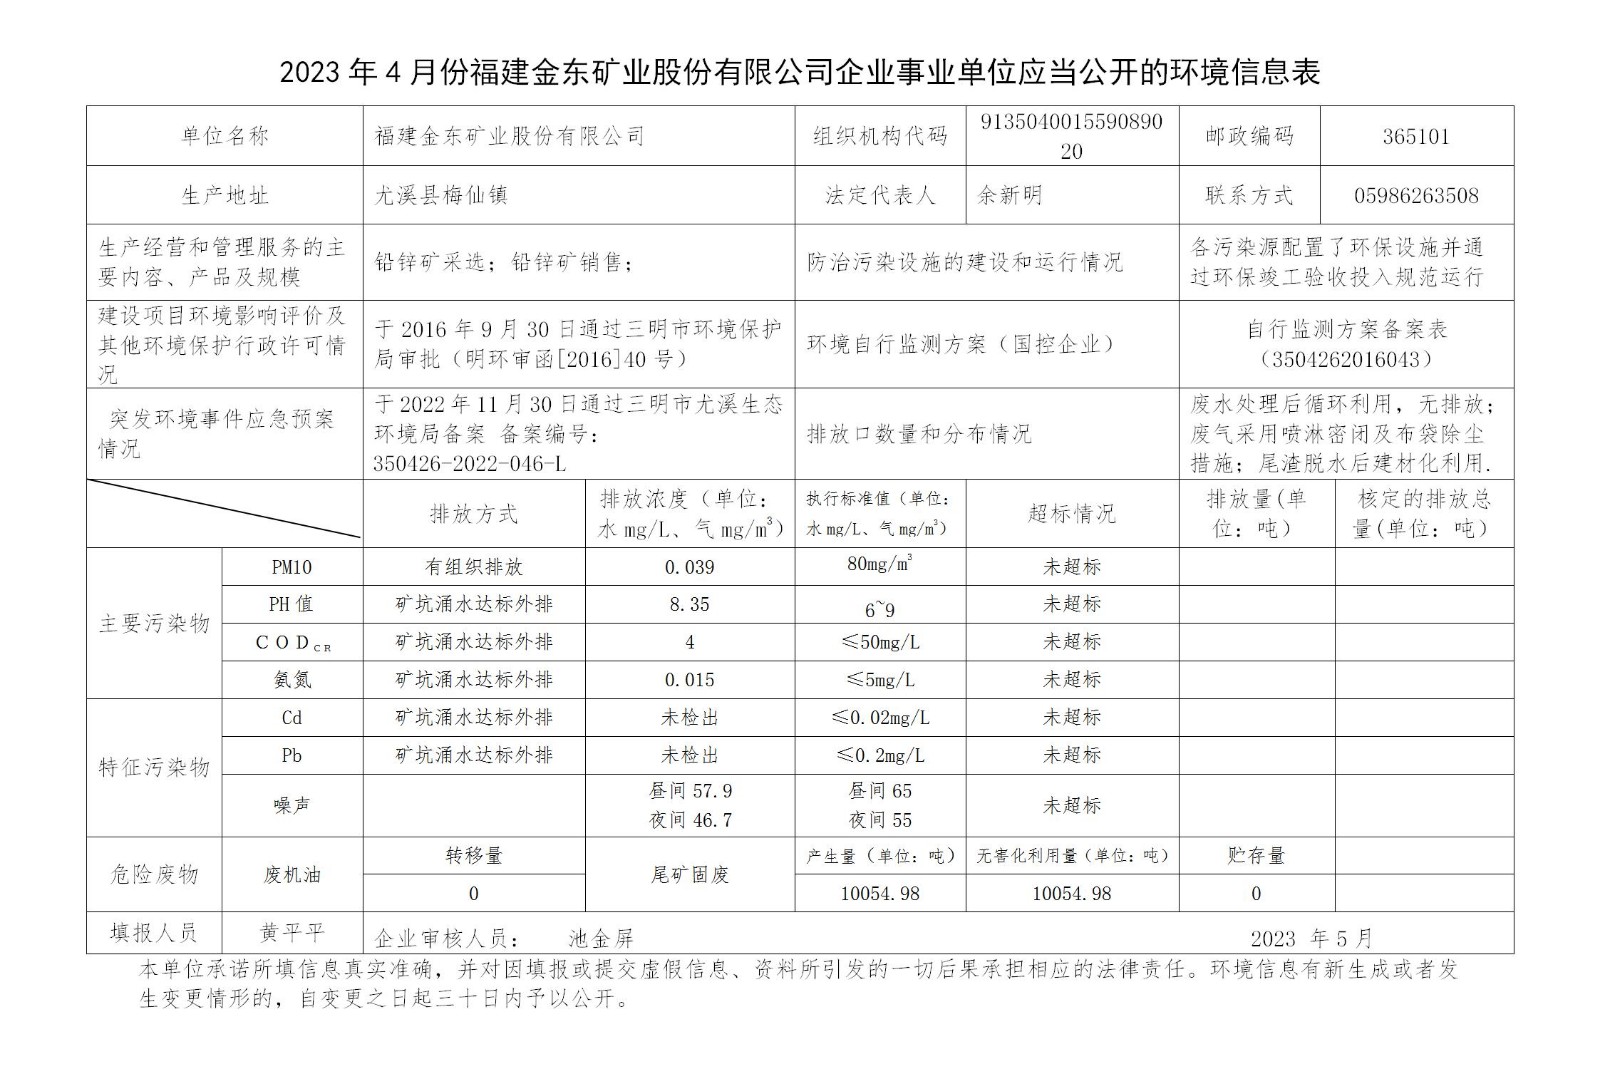 2023年4月份NBA下注官网-nba中国官方网站[HOME]企业事业单位应当公开的环境信息表_01.jpg